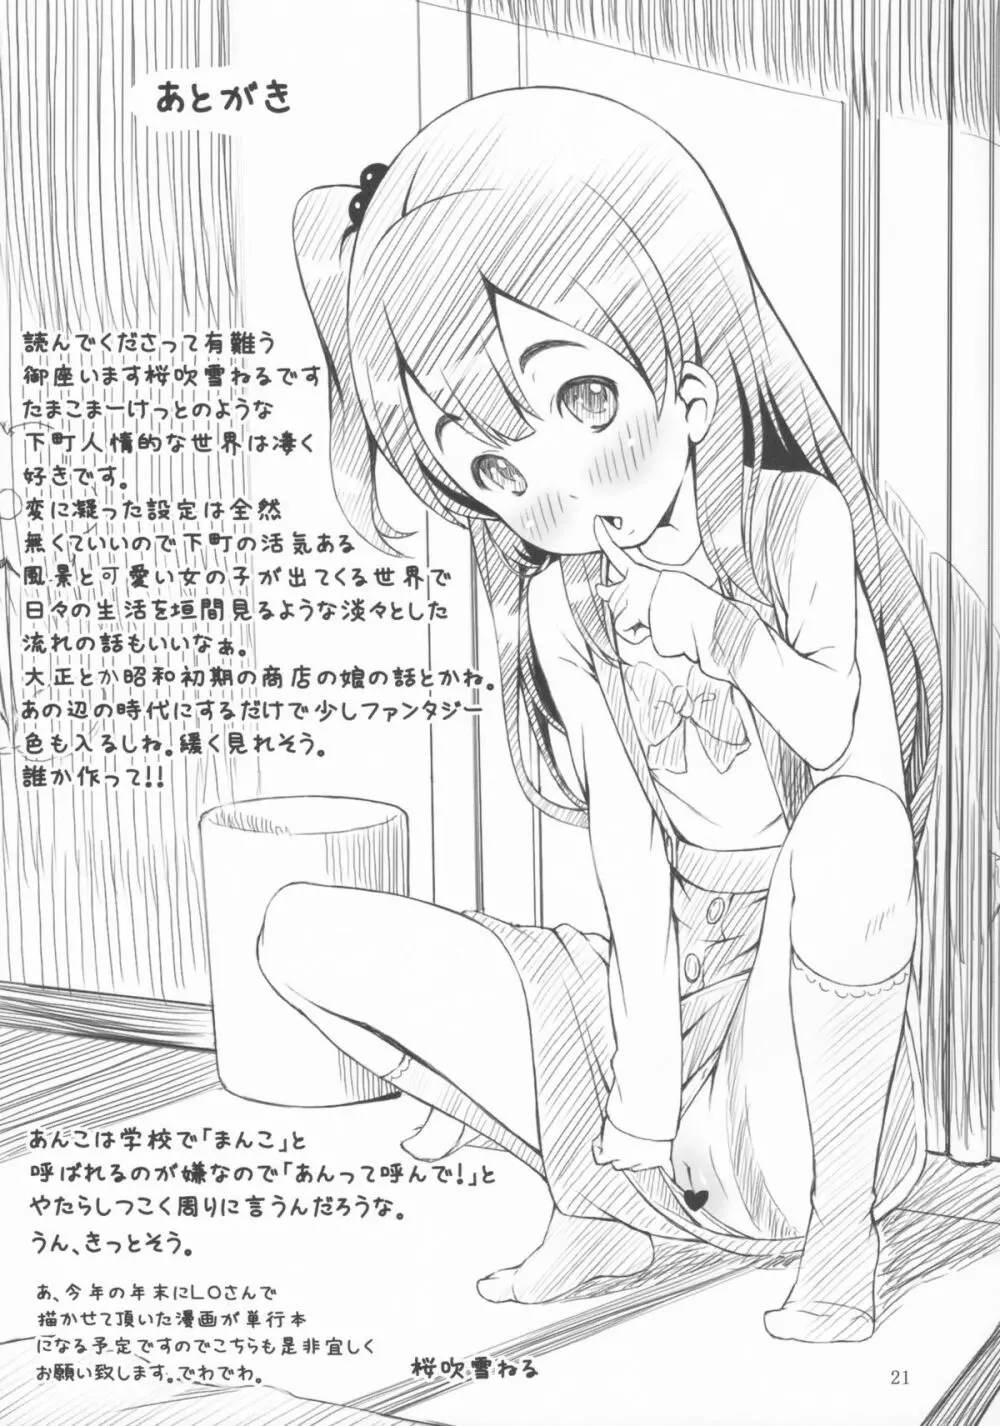 mochi-mochi anko chan - page20